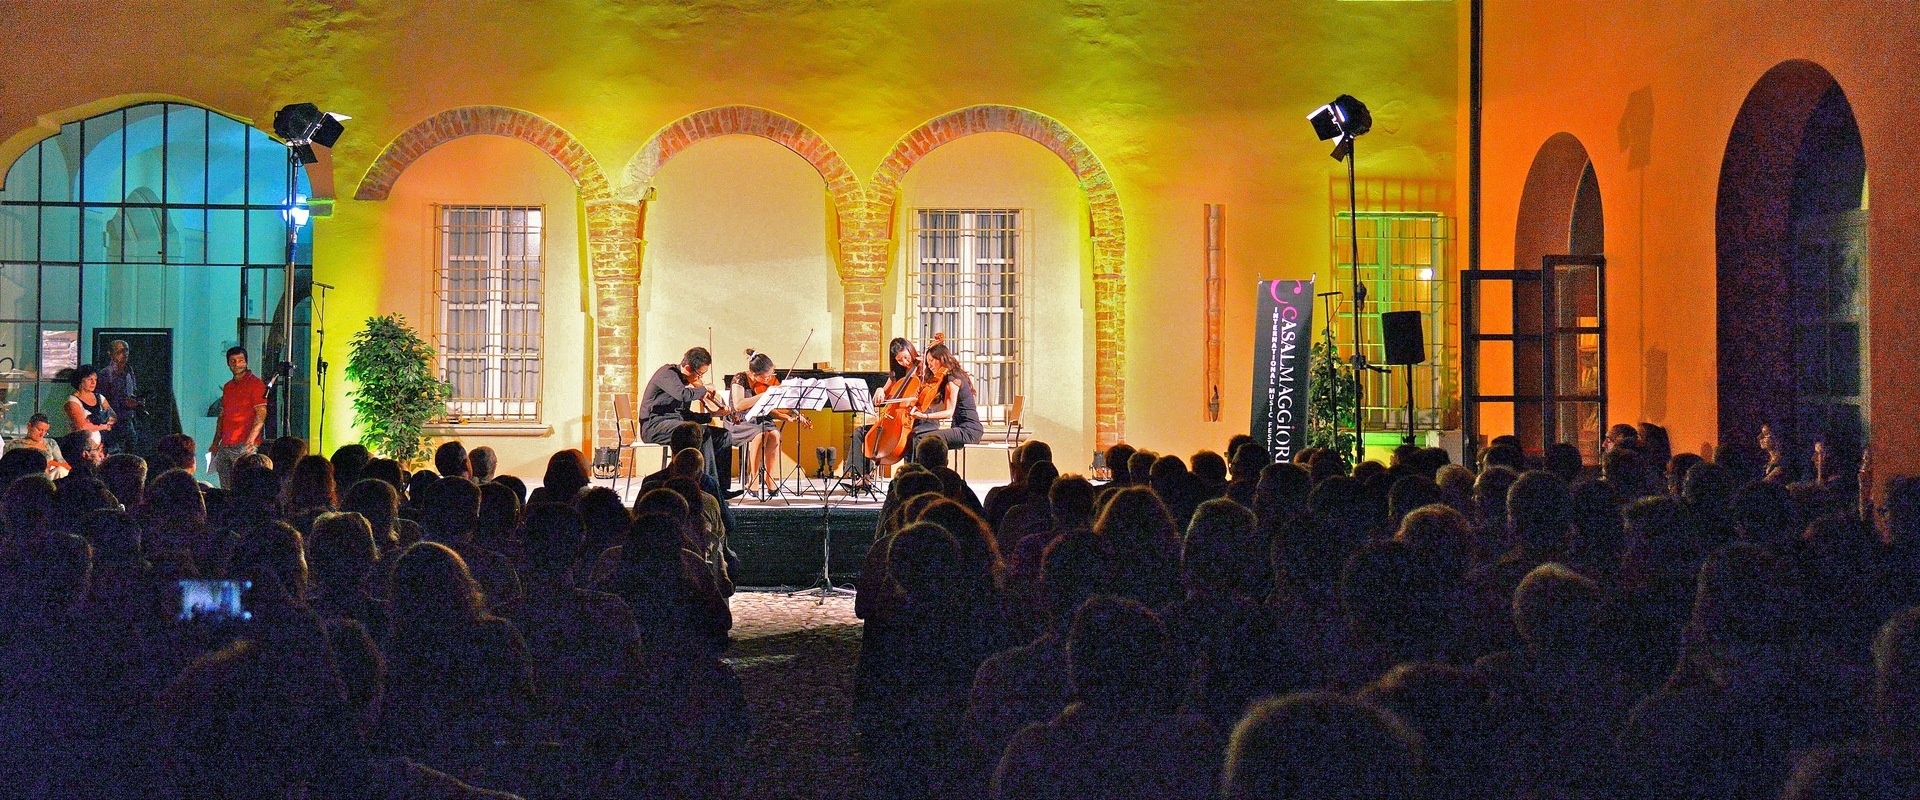 Casalmaggiore International Music Festival 2014